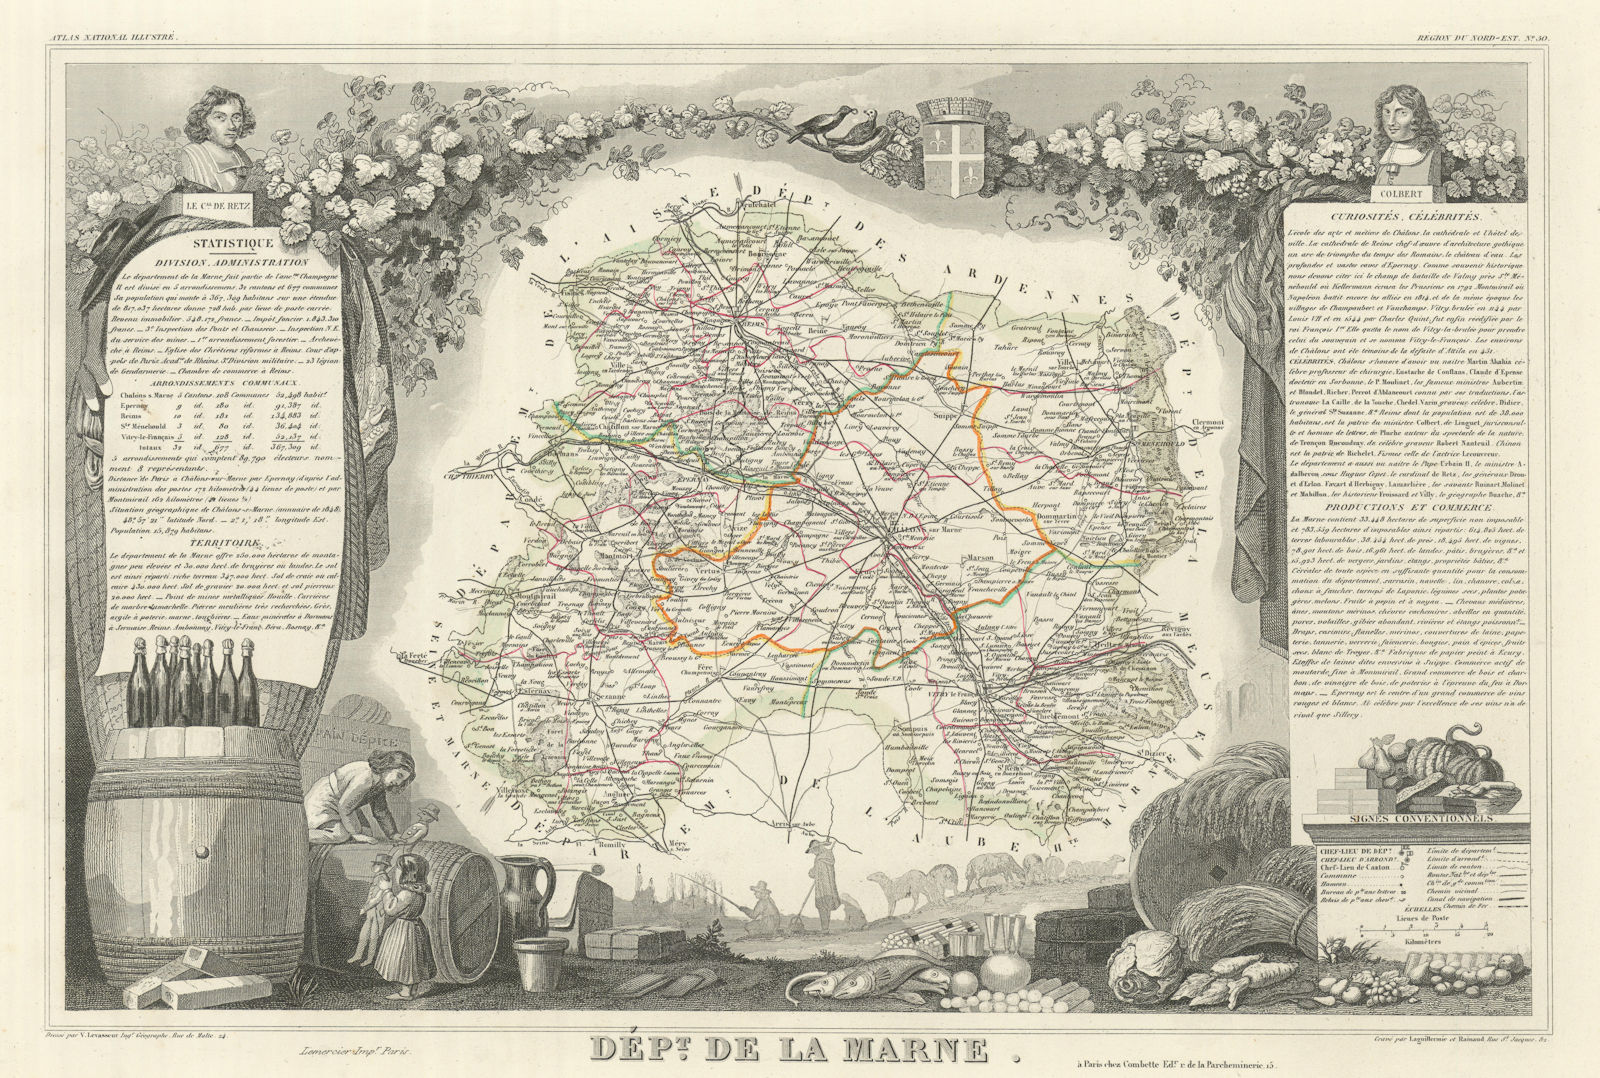 Associate Product Département de la MARNE. Decorative antique map/carte by Victor LEVASSEUR 1856